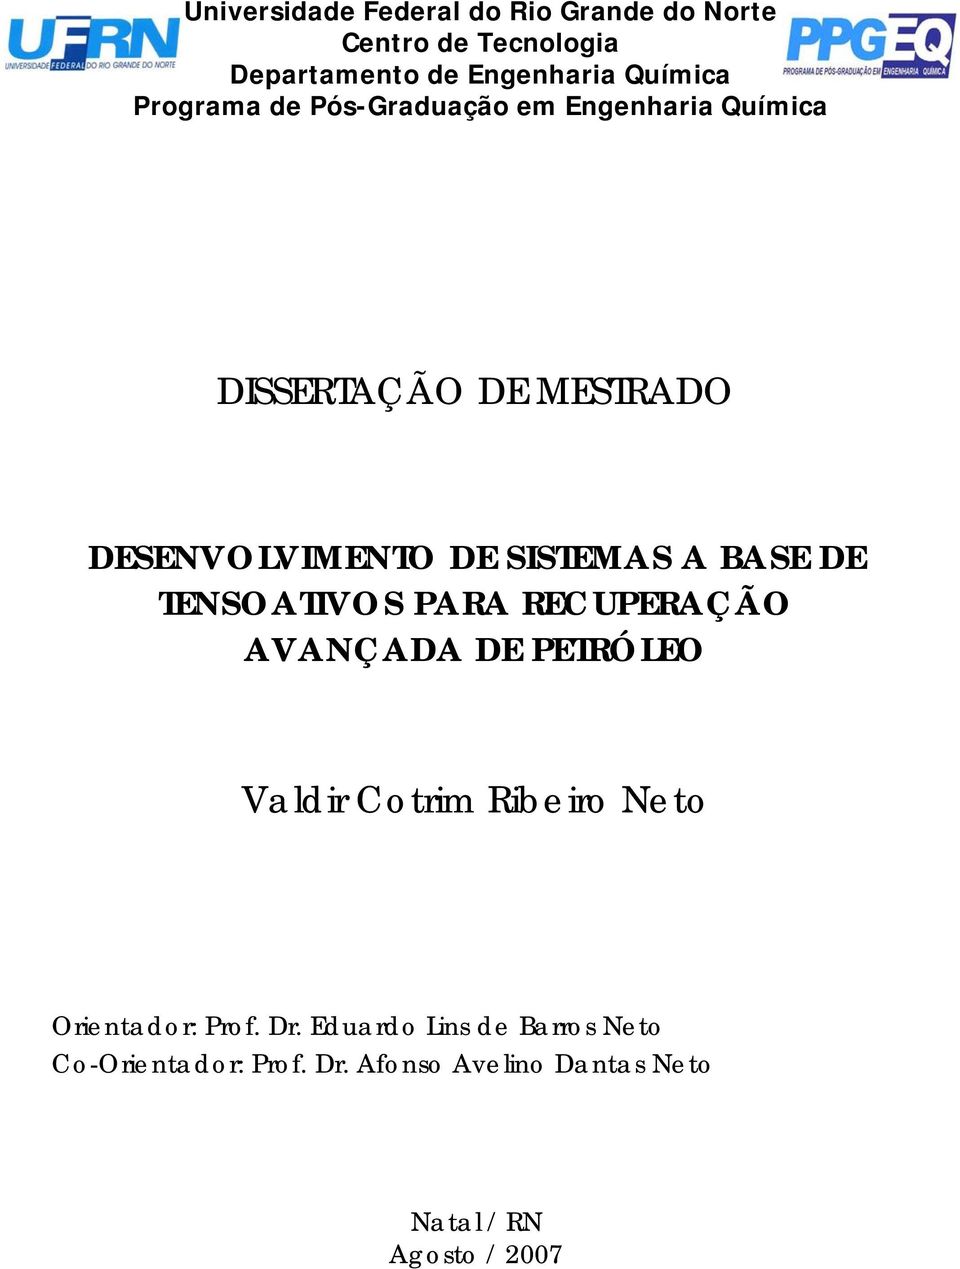 BASE DE TENSOATIVOS PARA RECUPERAÇÃO AVANÇADA DE PETRÓLEO Valdir Cotrim Ribeiro Neto Orientador: Prof.